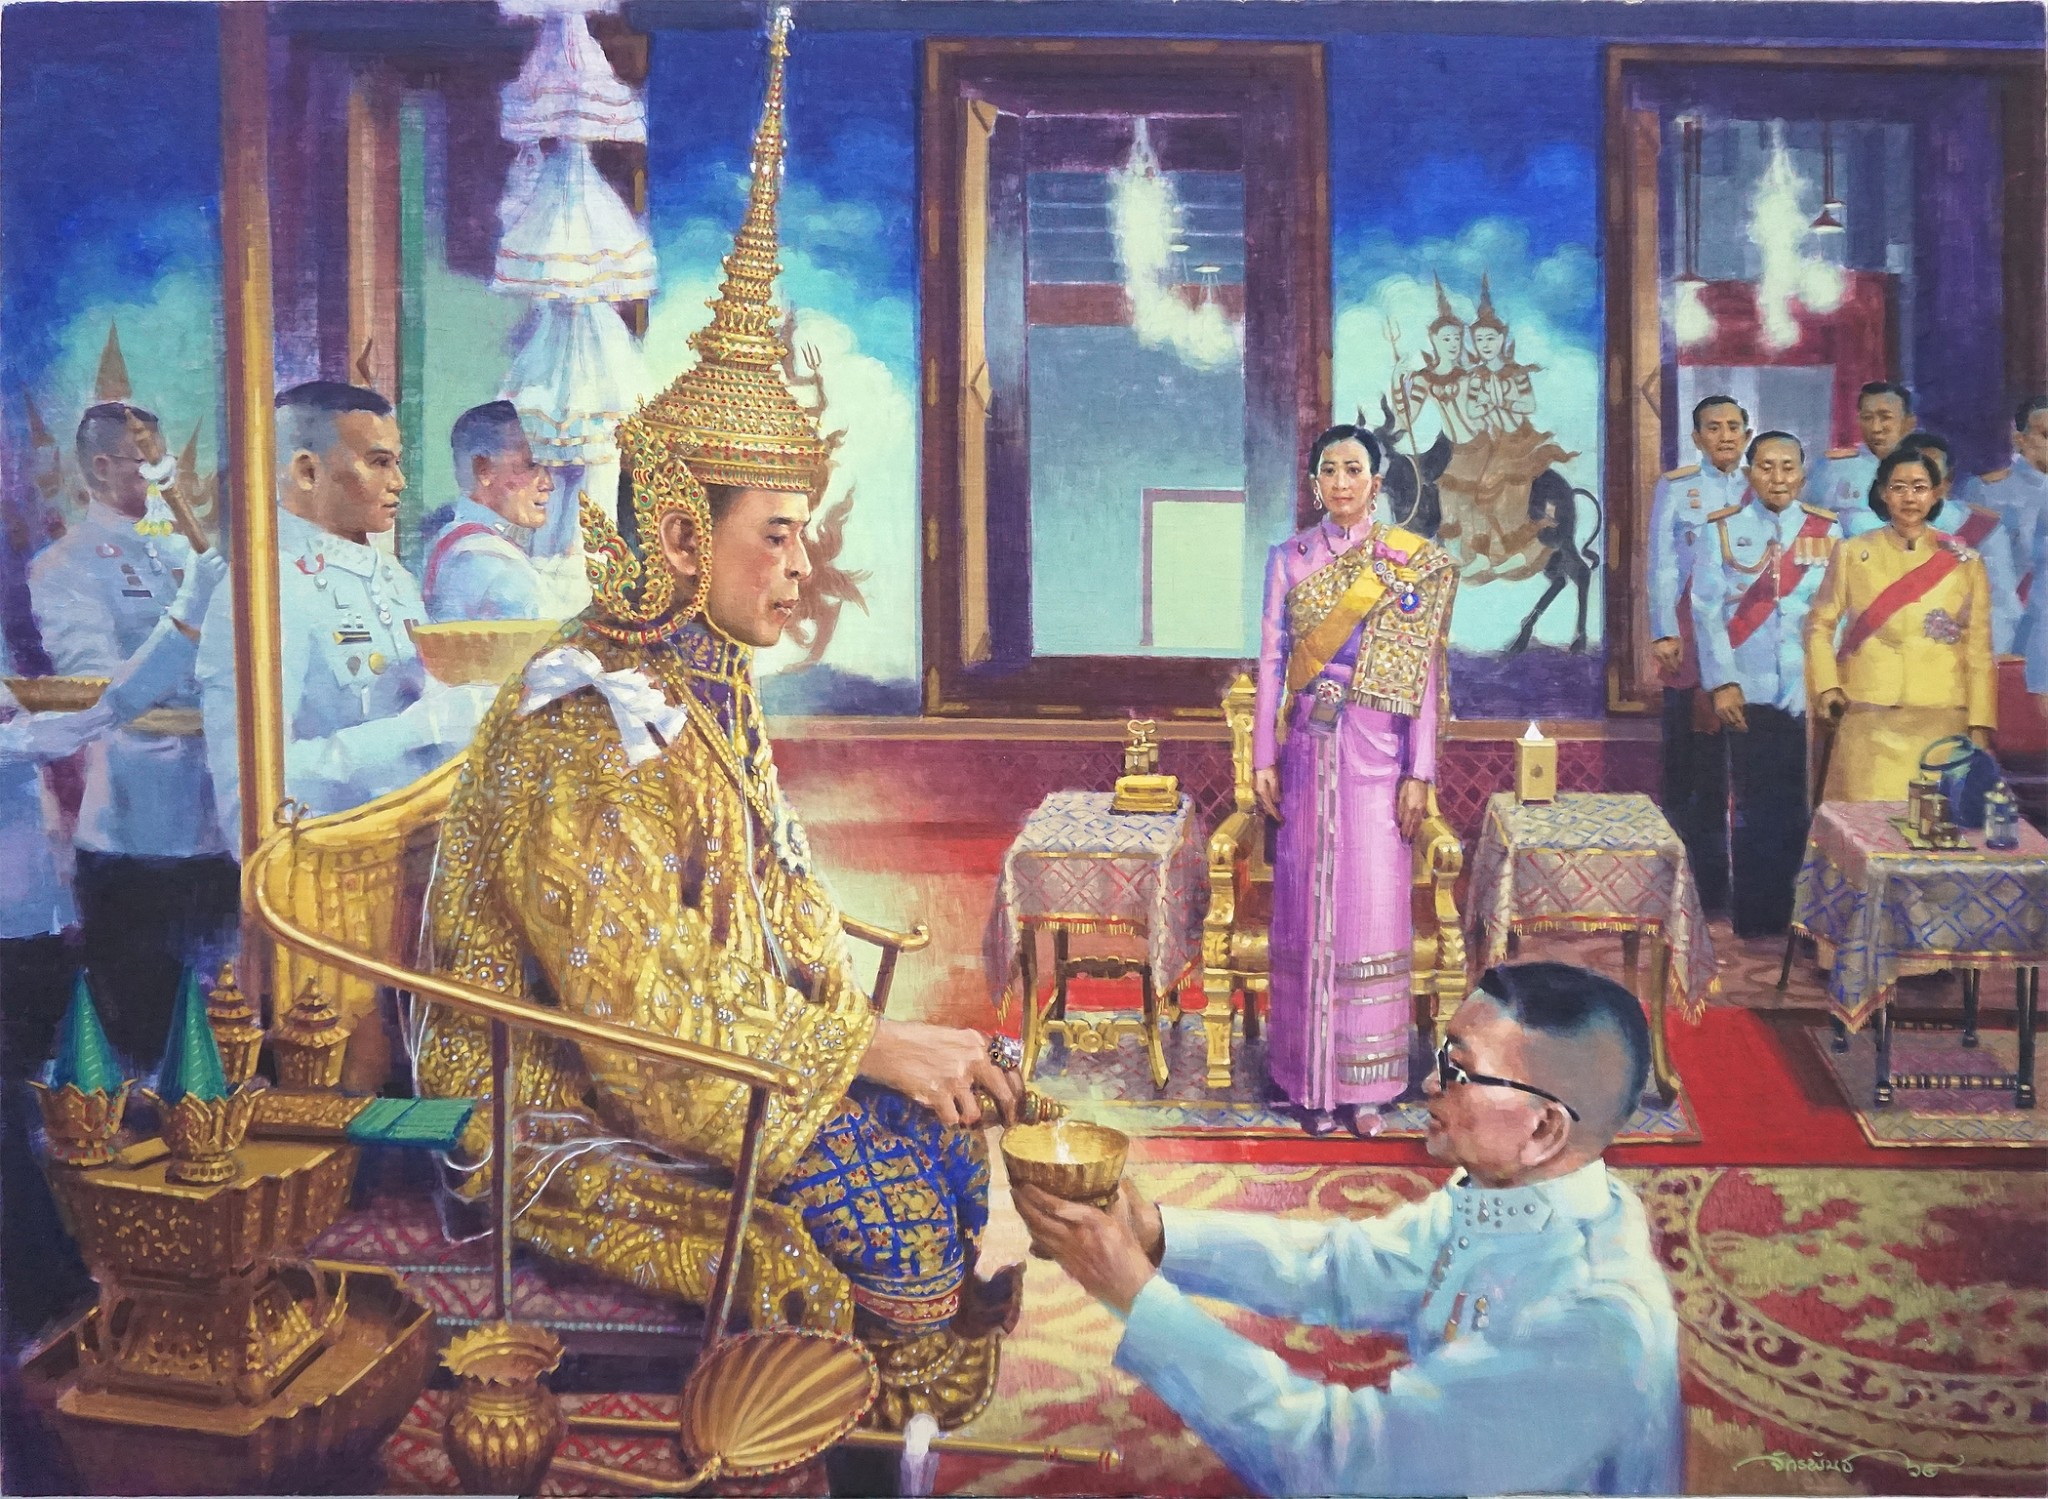 สำนักช่างสิบหมู่ จัดนิทรรศการเฉลิมพระเกียรติ “ช่างศิลป์ไทยเทิดไท้องค์ราชัน” – สังคม